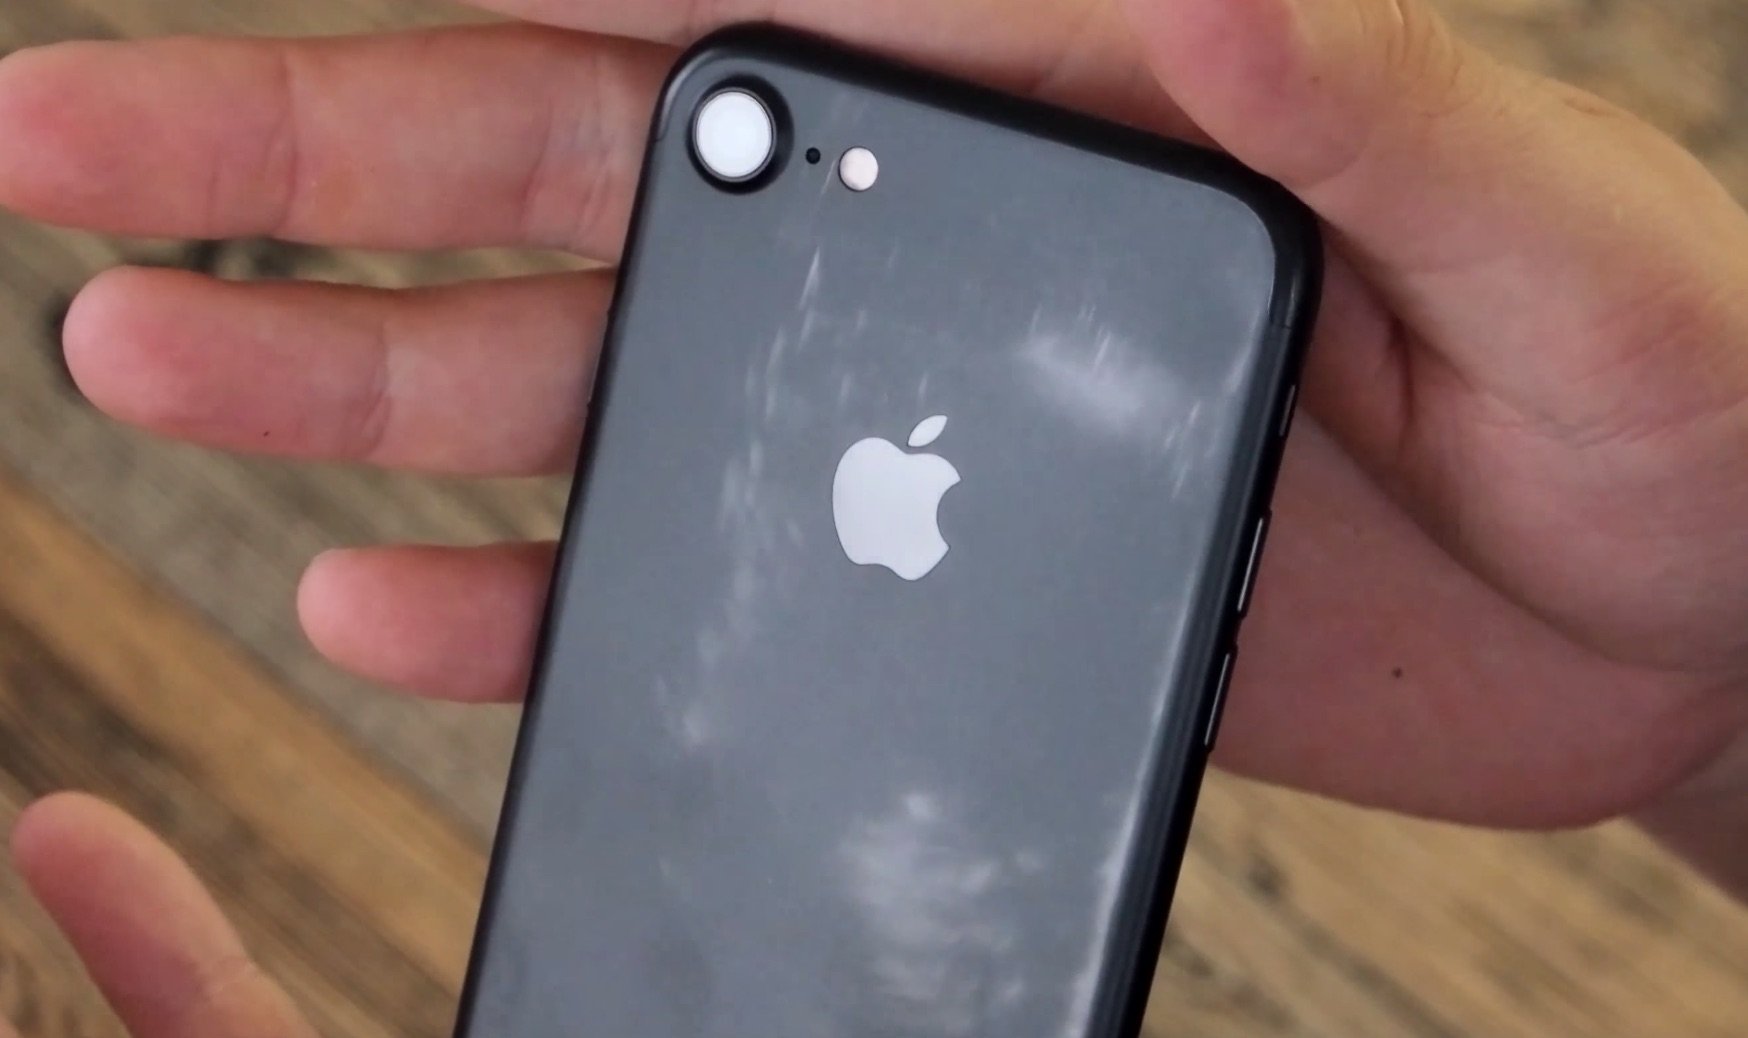 Neue Farbprobleme: schwarzes iPhone 7 verliert Matt-Effekt durch Nutzung? 3